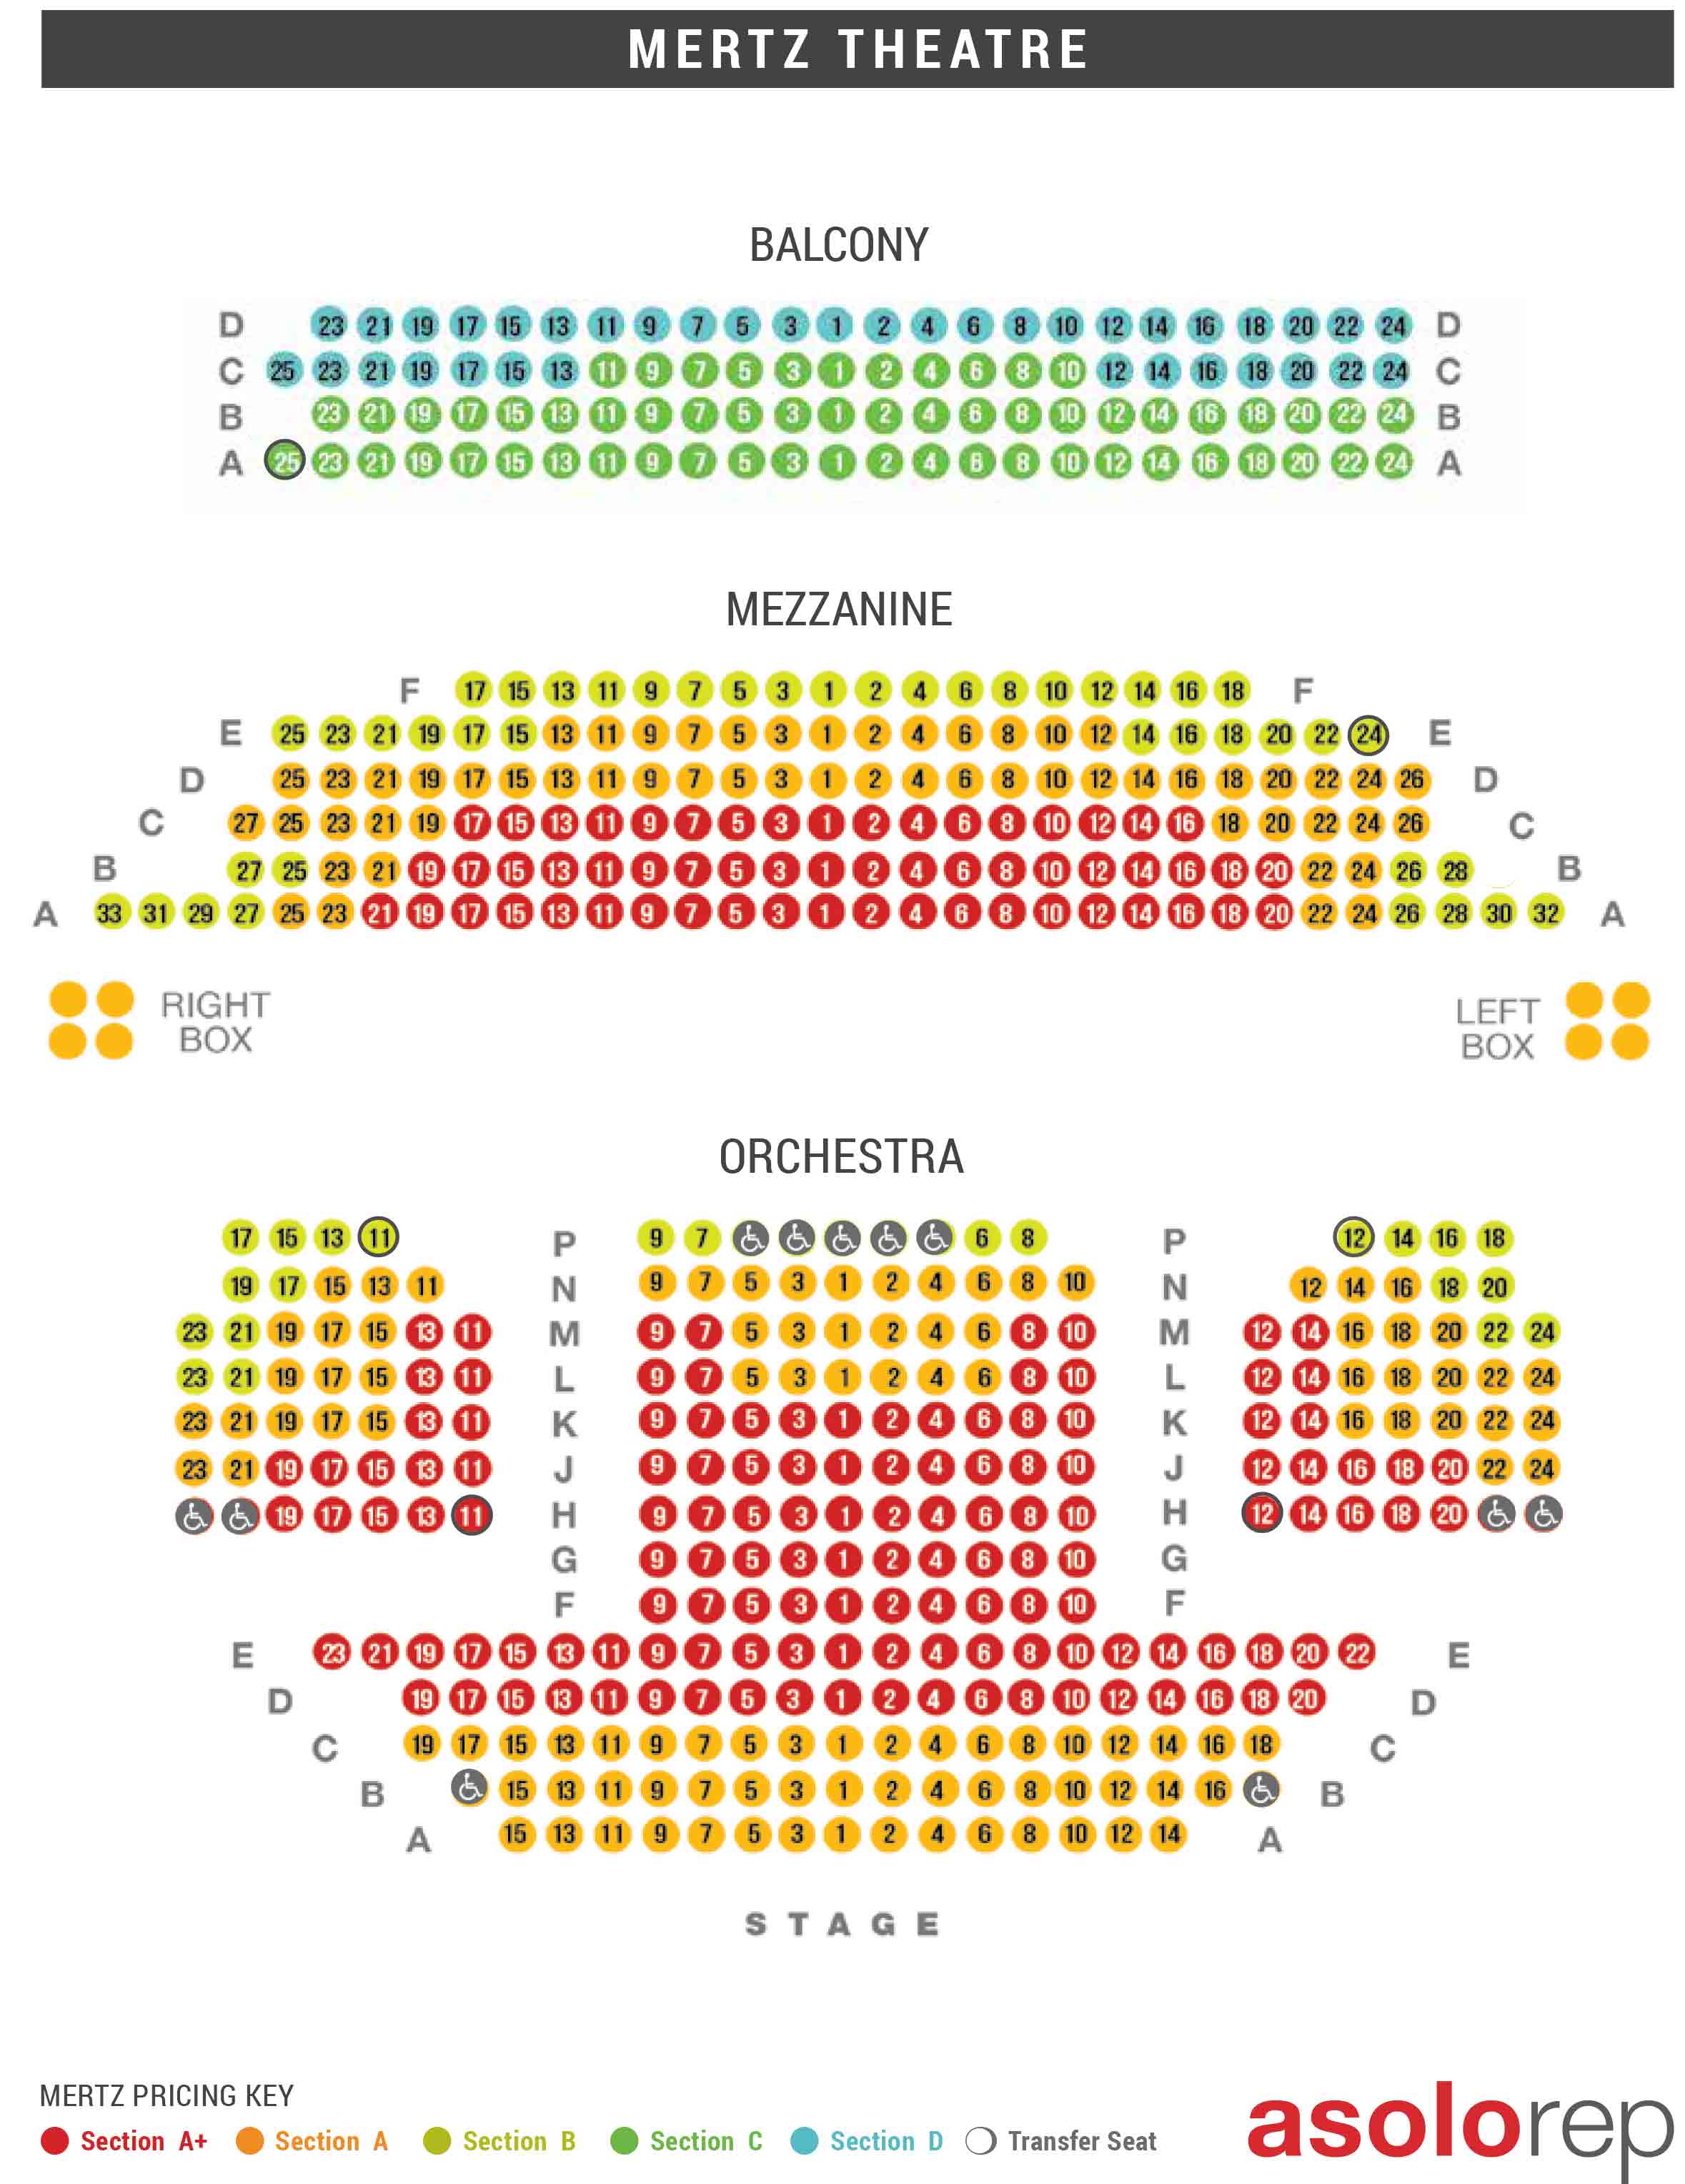 Sarasota Opera House Seating Chart